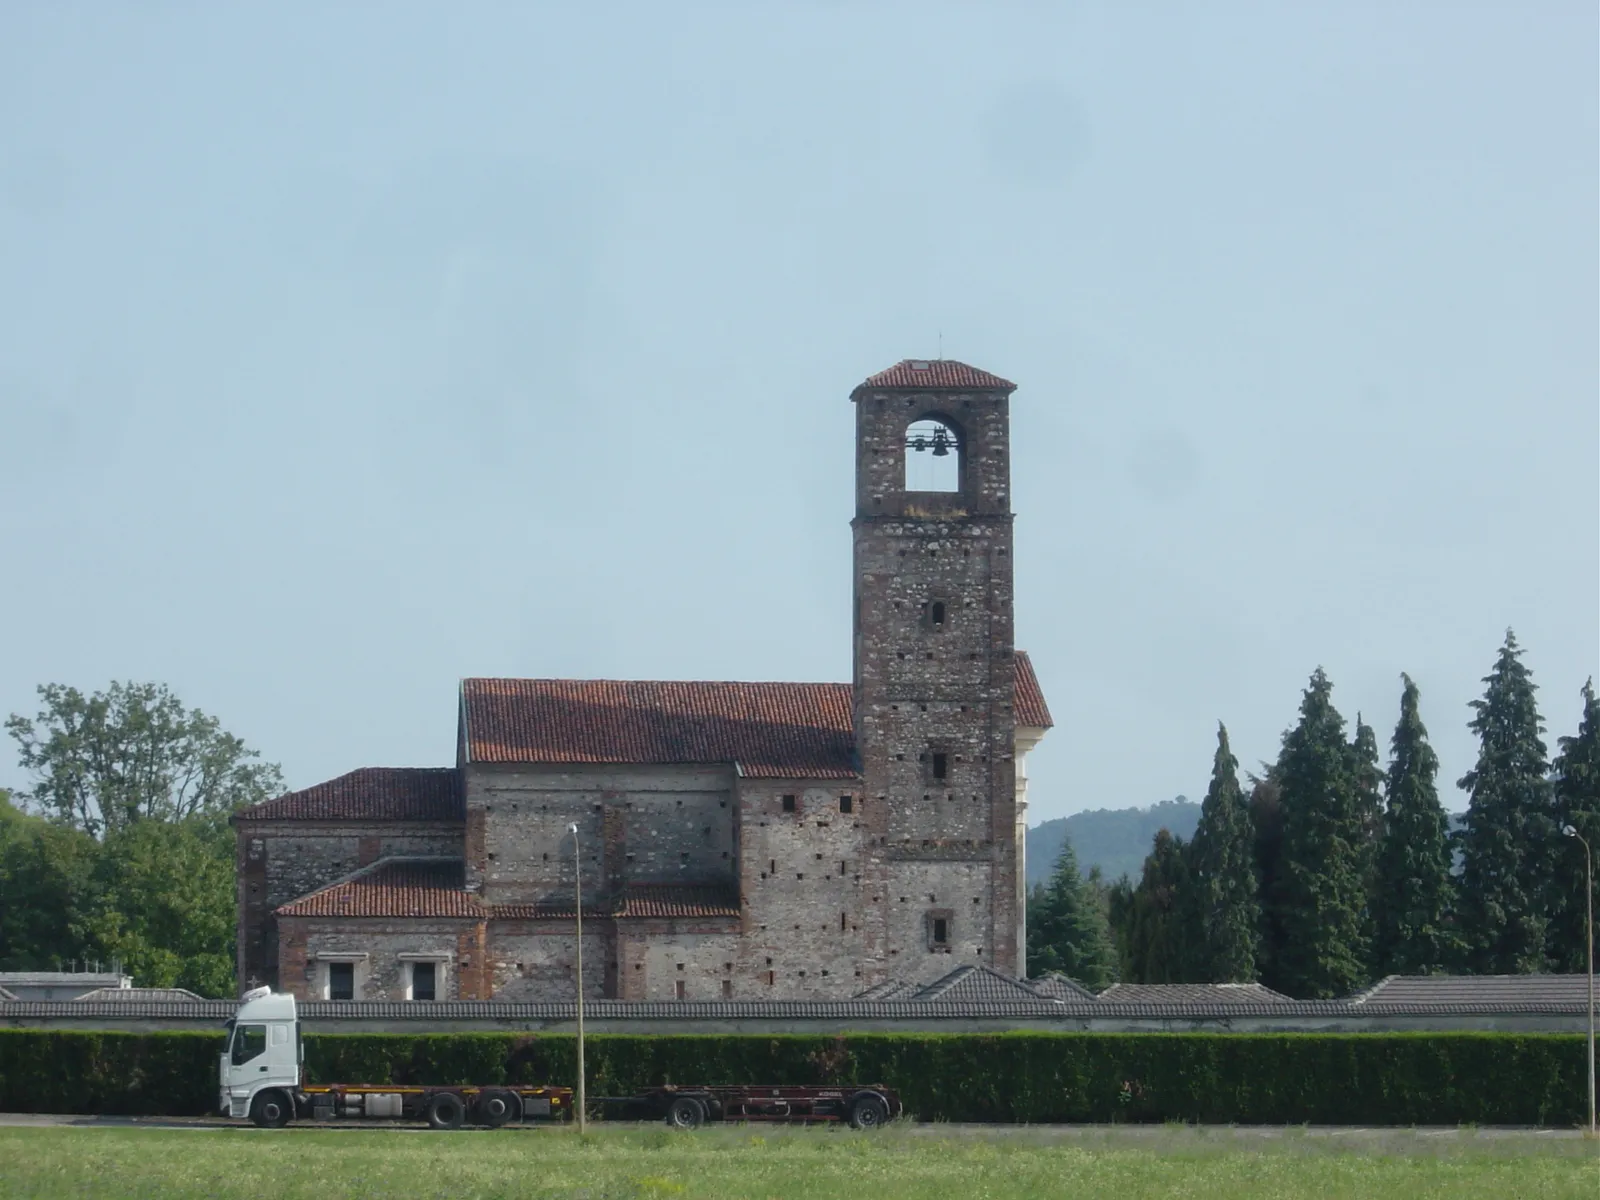 Bilde av Piemonte